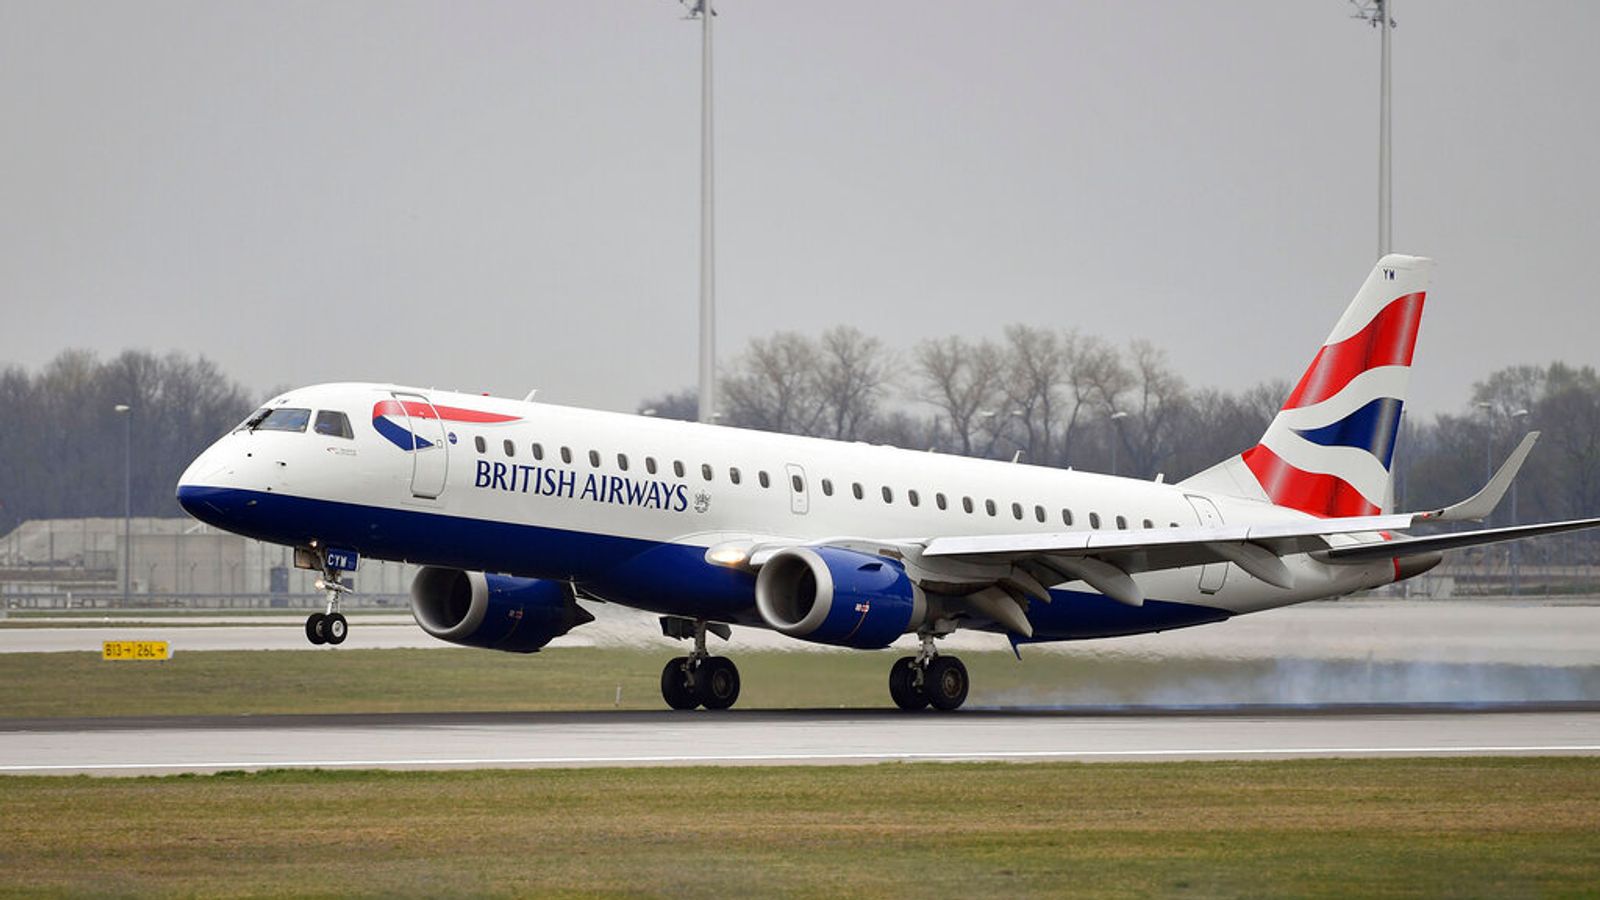 British Airways annule 11% des vols pendant le pic des vacances d’été pour éviter les perturbations de l’aéroport |  Actualité économique